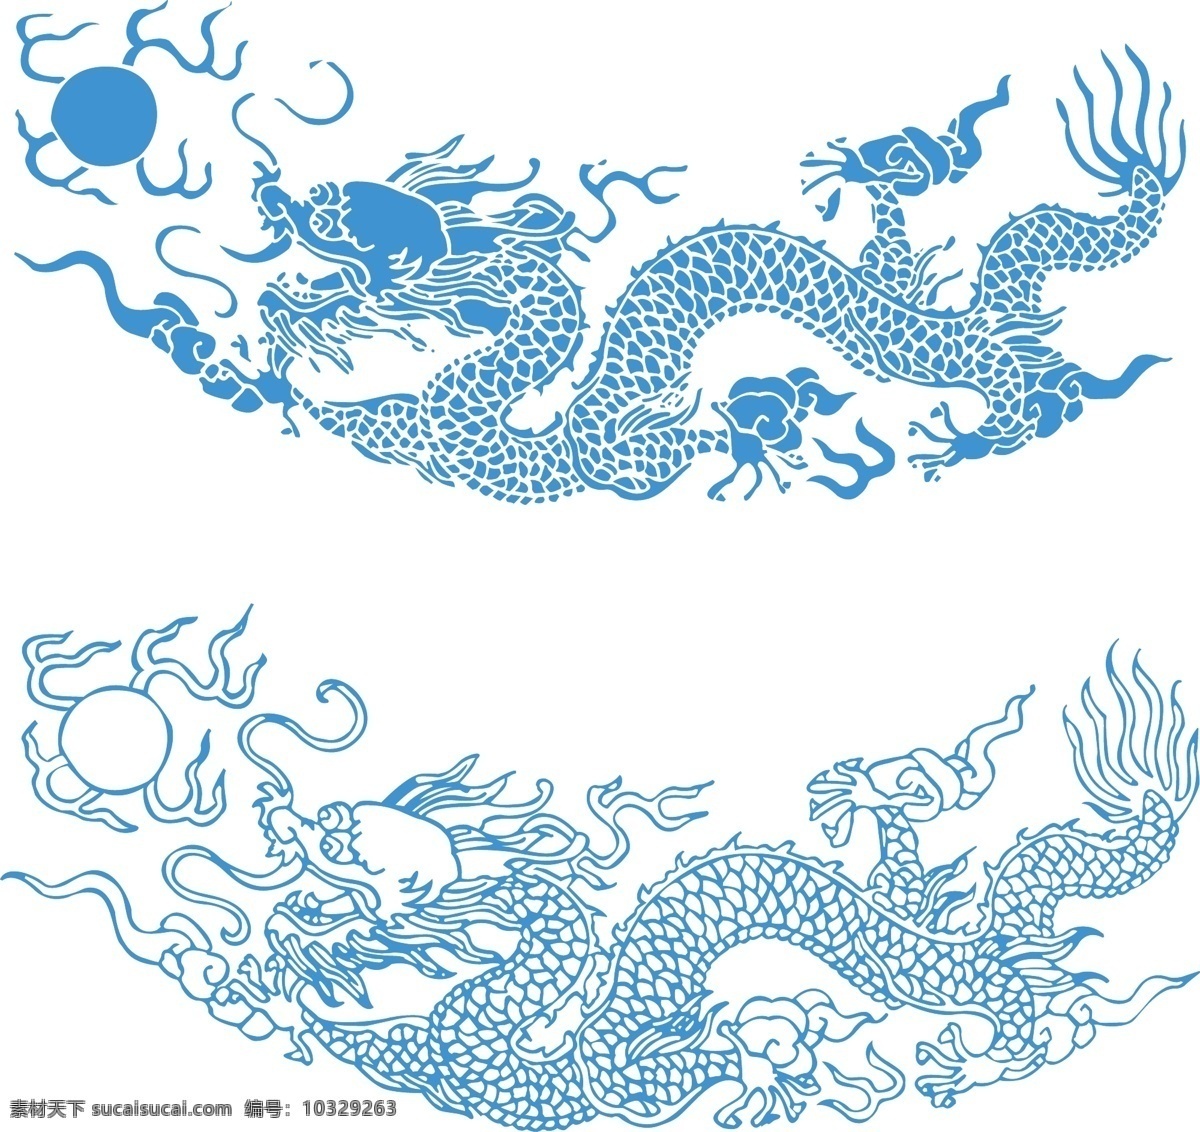 龙 图案 矢量 材料 传统 古典 蓝色 龙矢量素材 模式 中国龙 矢量图 其他矢量图